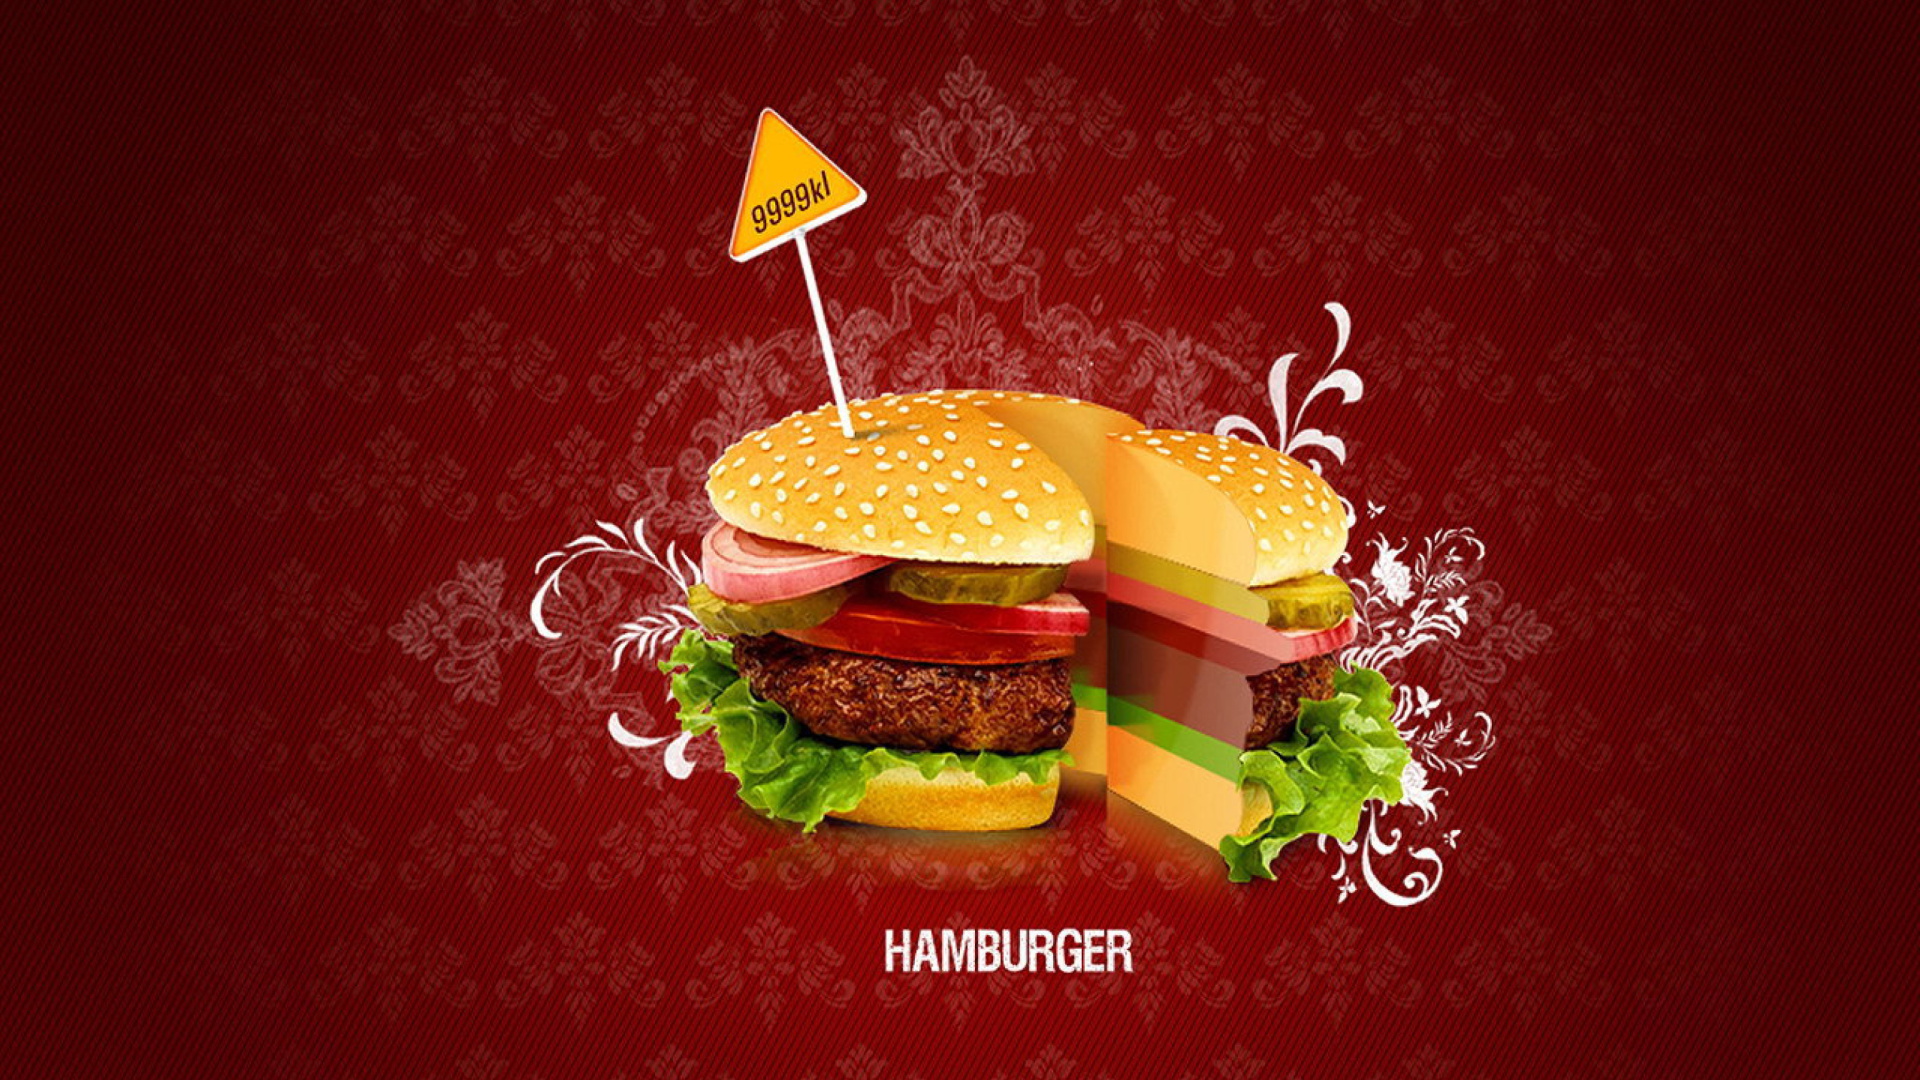 Hamburger wallpaper 1920x1080